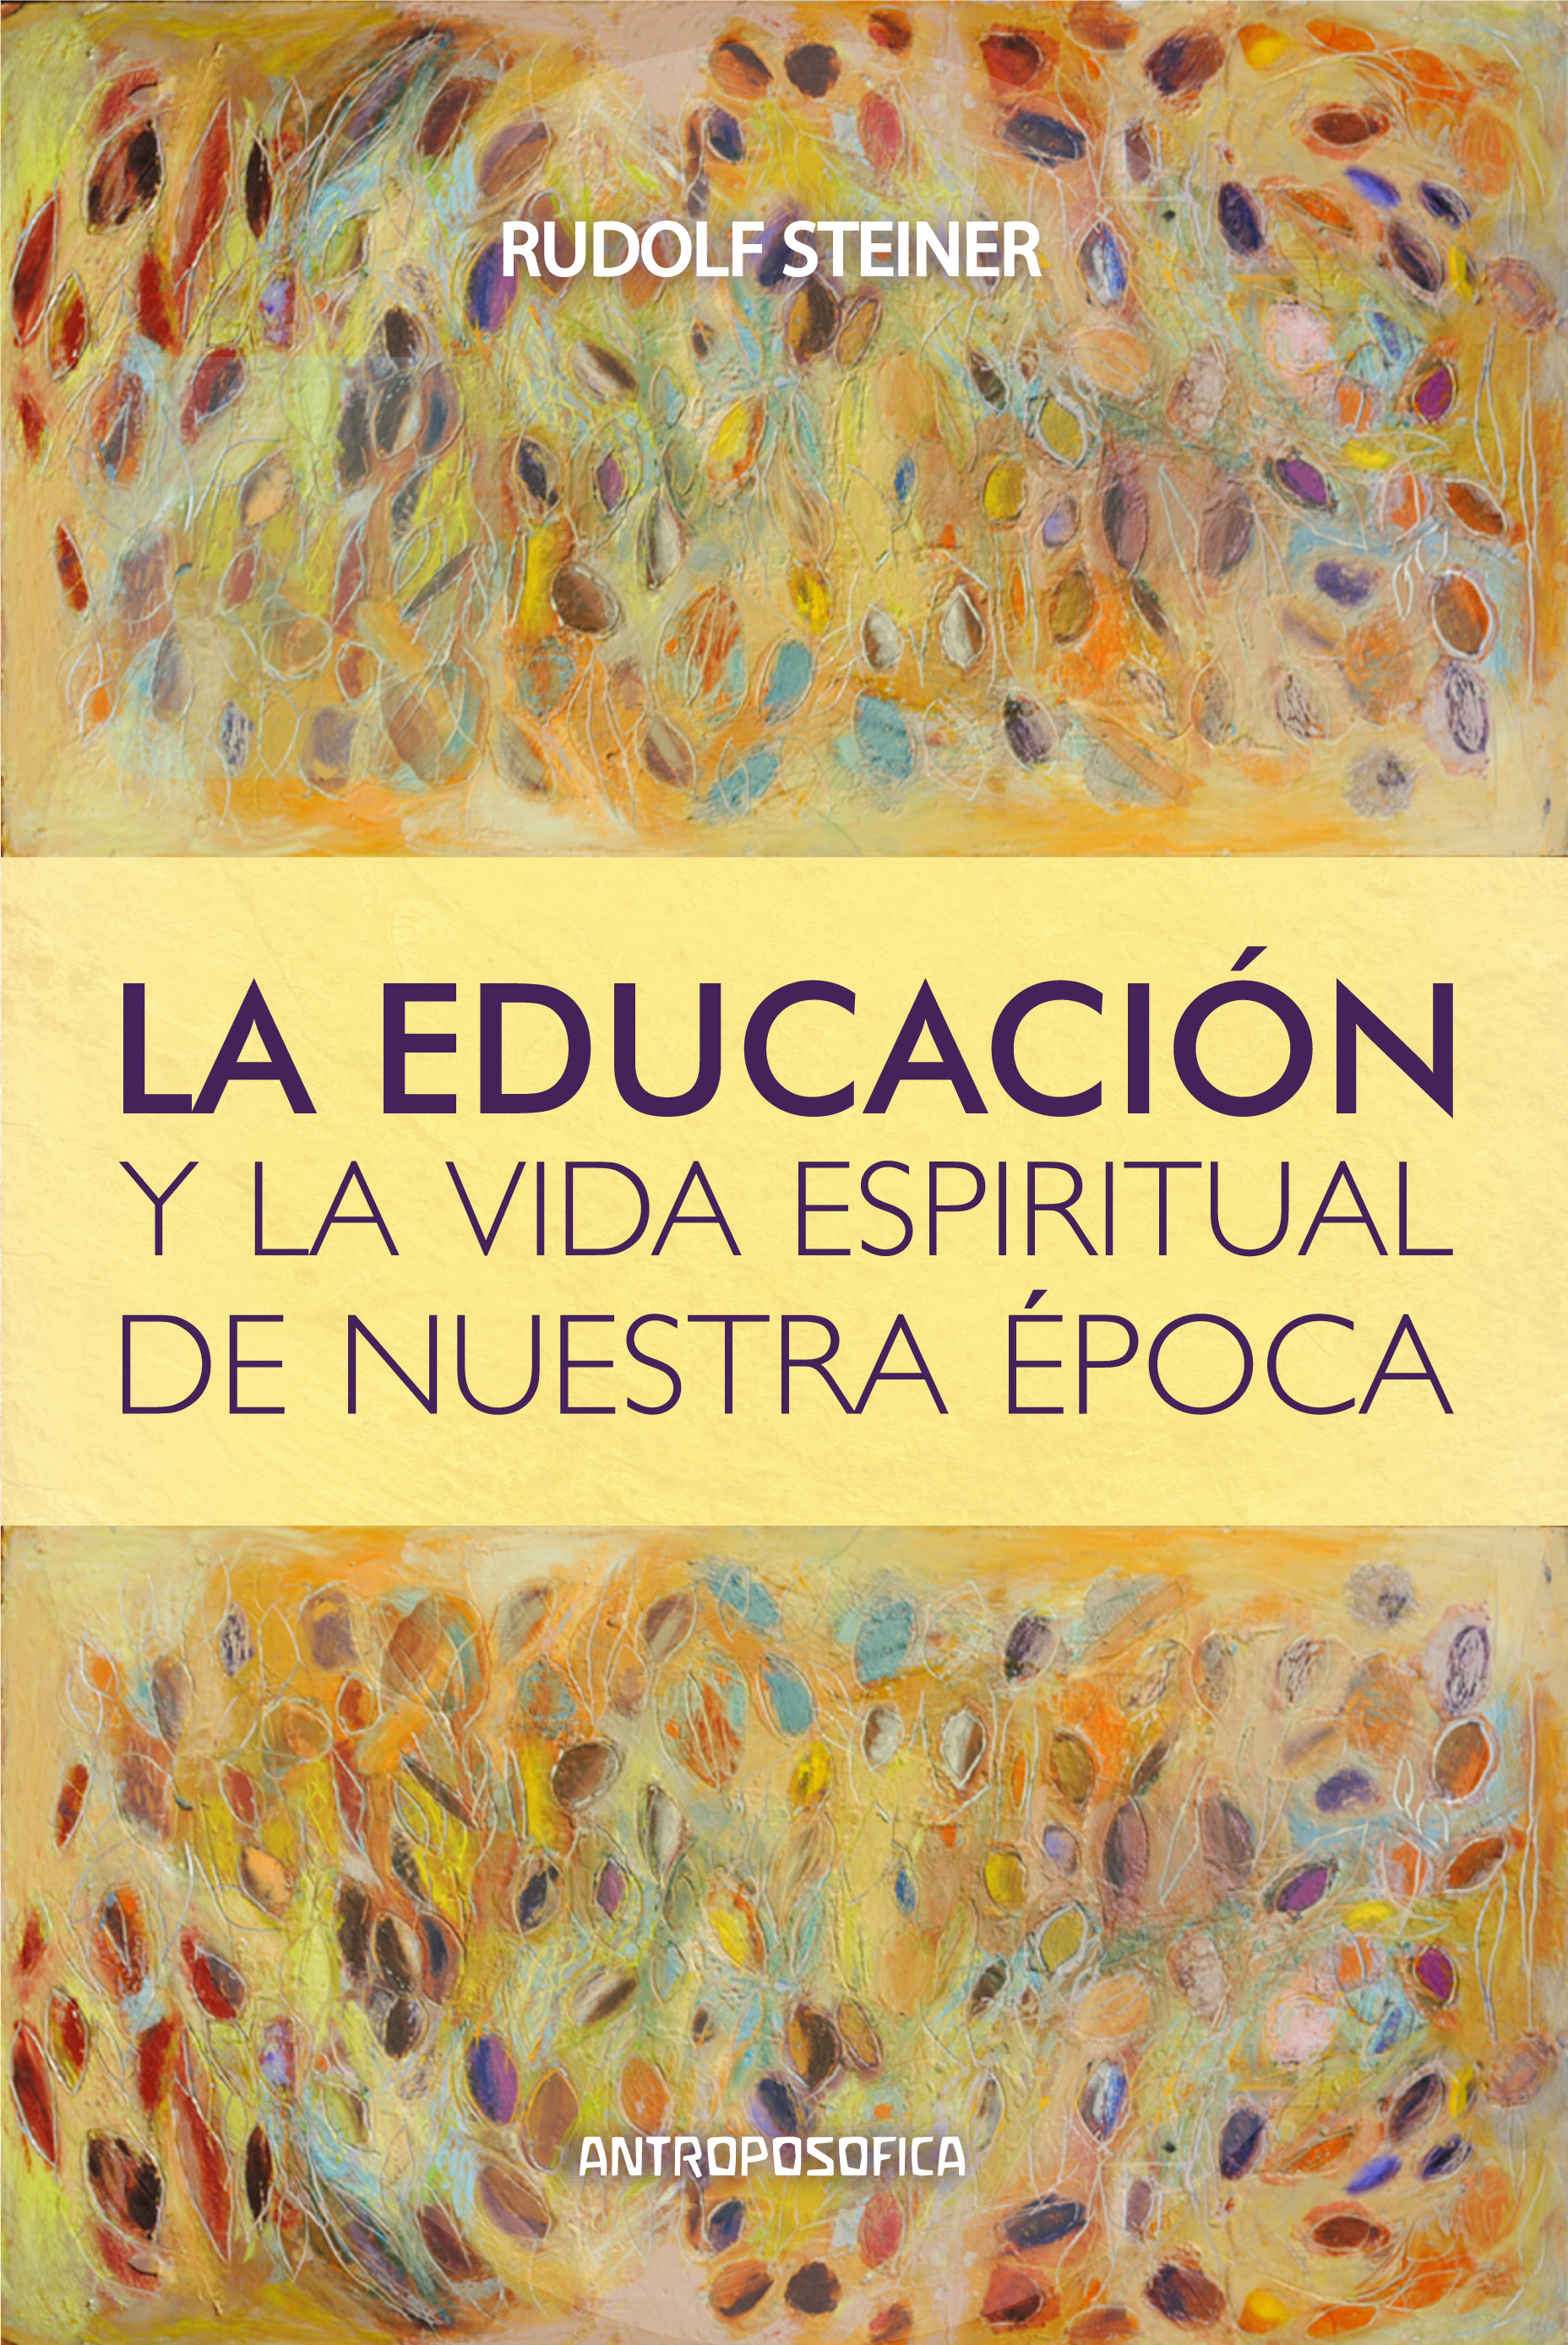 
            La educación y la vida espiritual de nuestra época